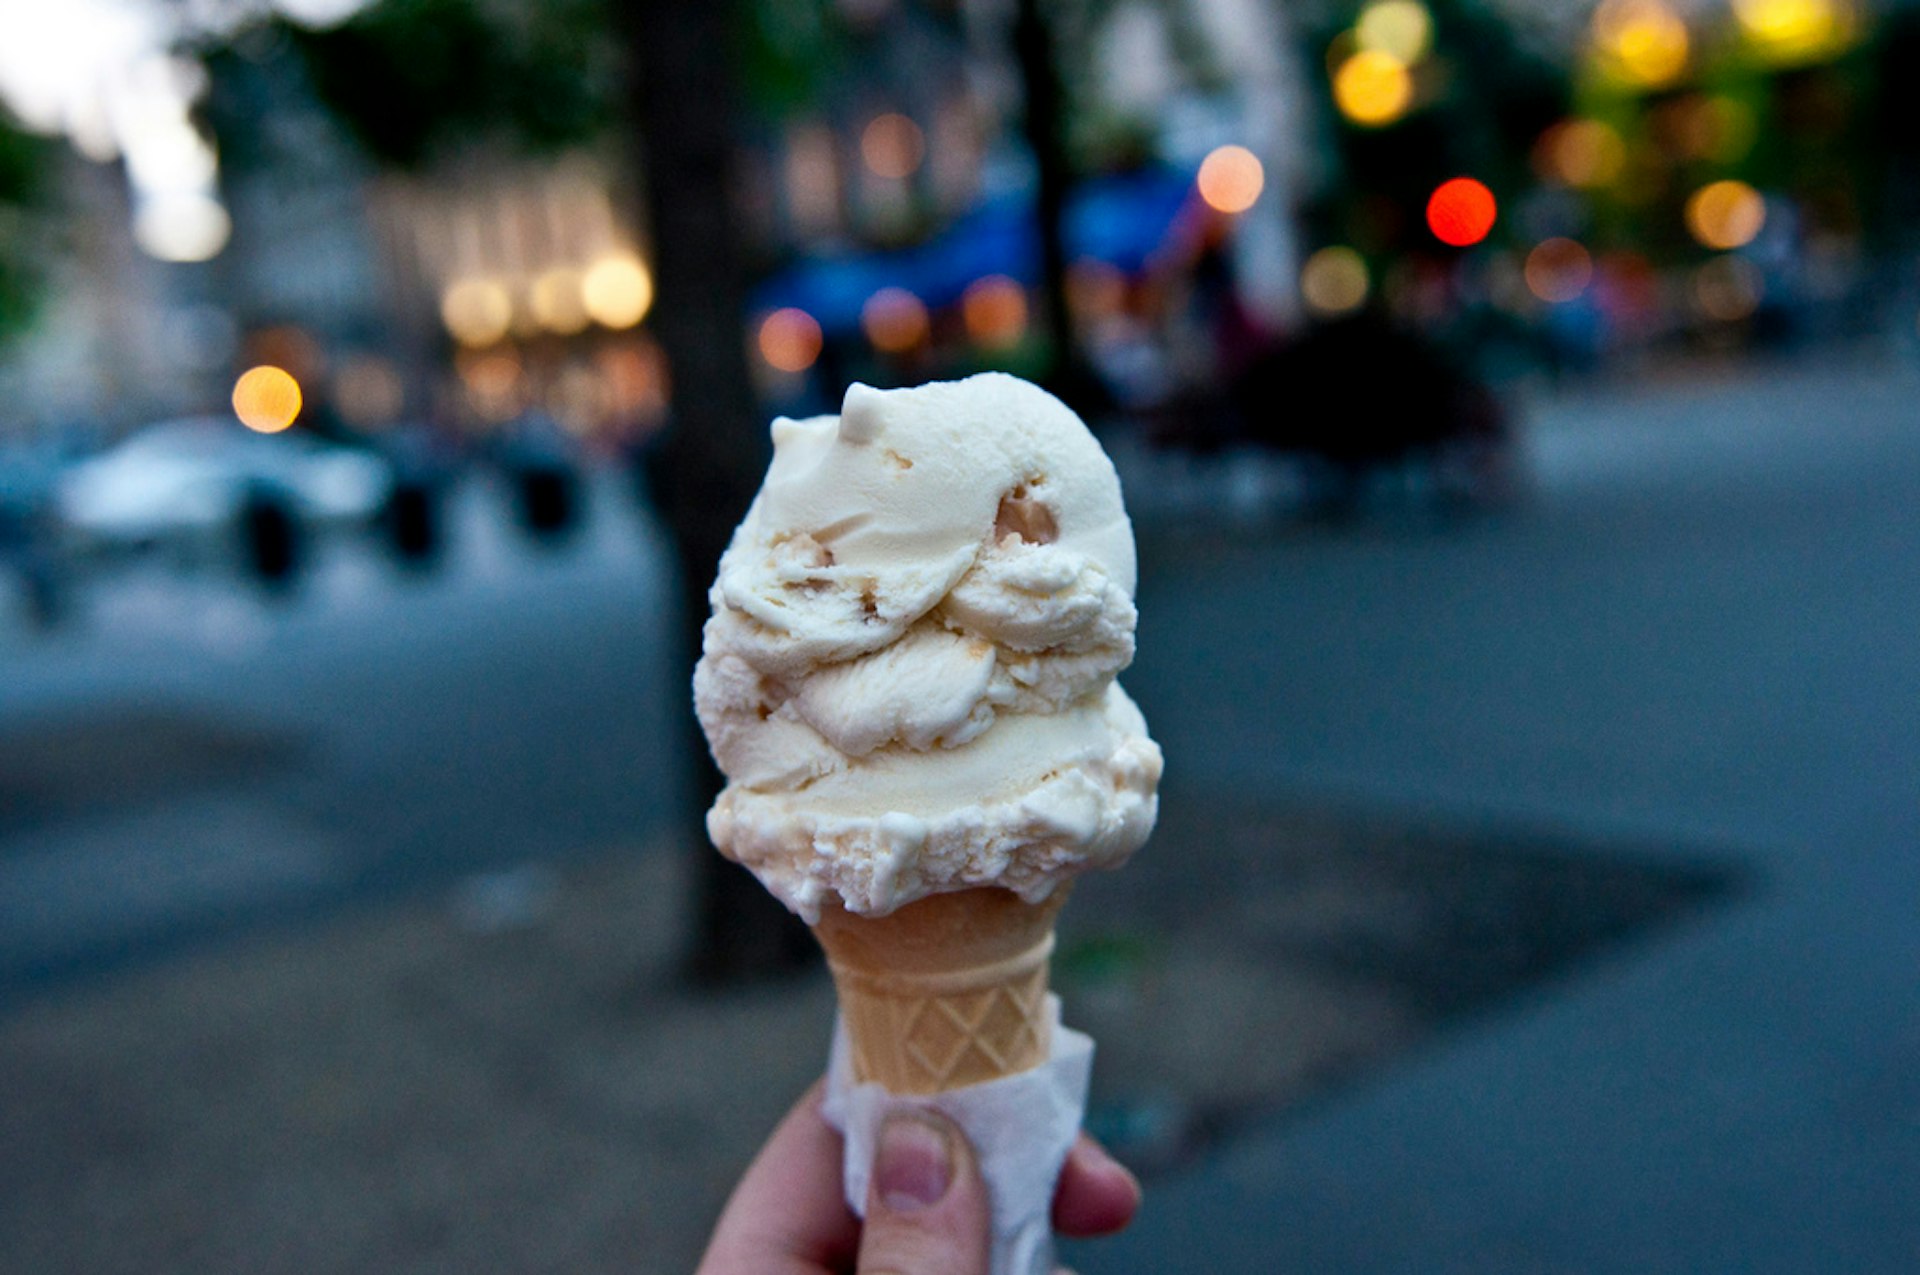 Enjoying ice cream on the Grassmarket. Image by Ashton / CC BY 2.0